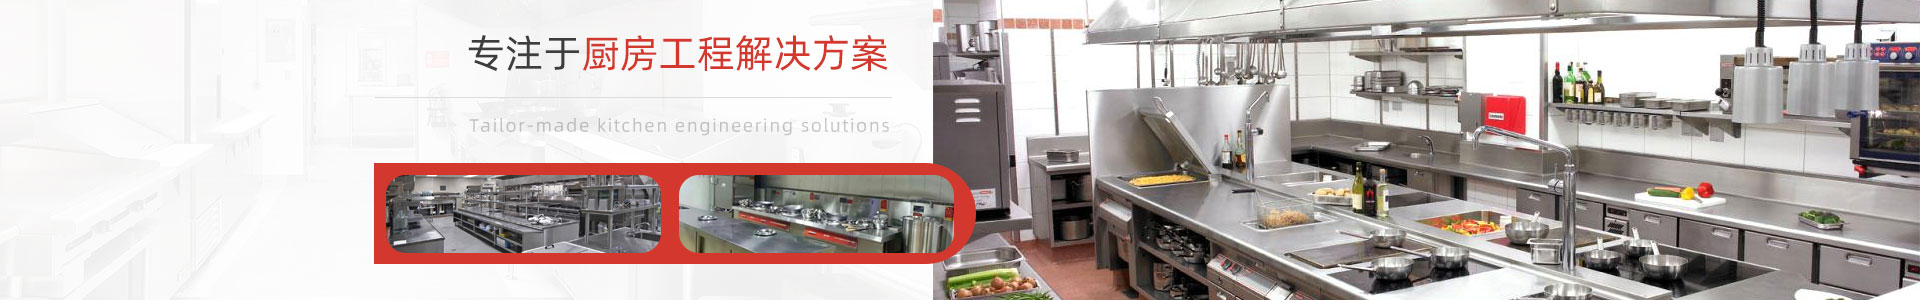 深圳市宏润厨房设备有(yǒu)限公司-连锁餐饮厨房工程案例